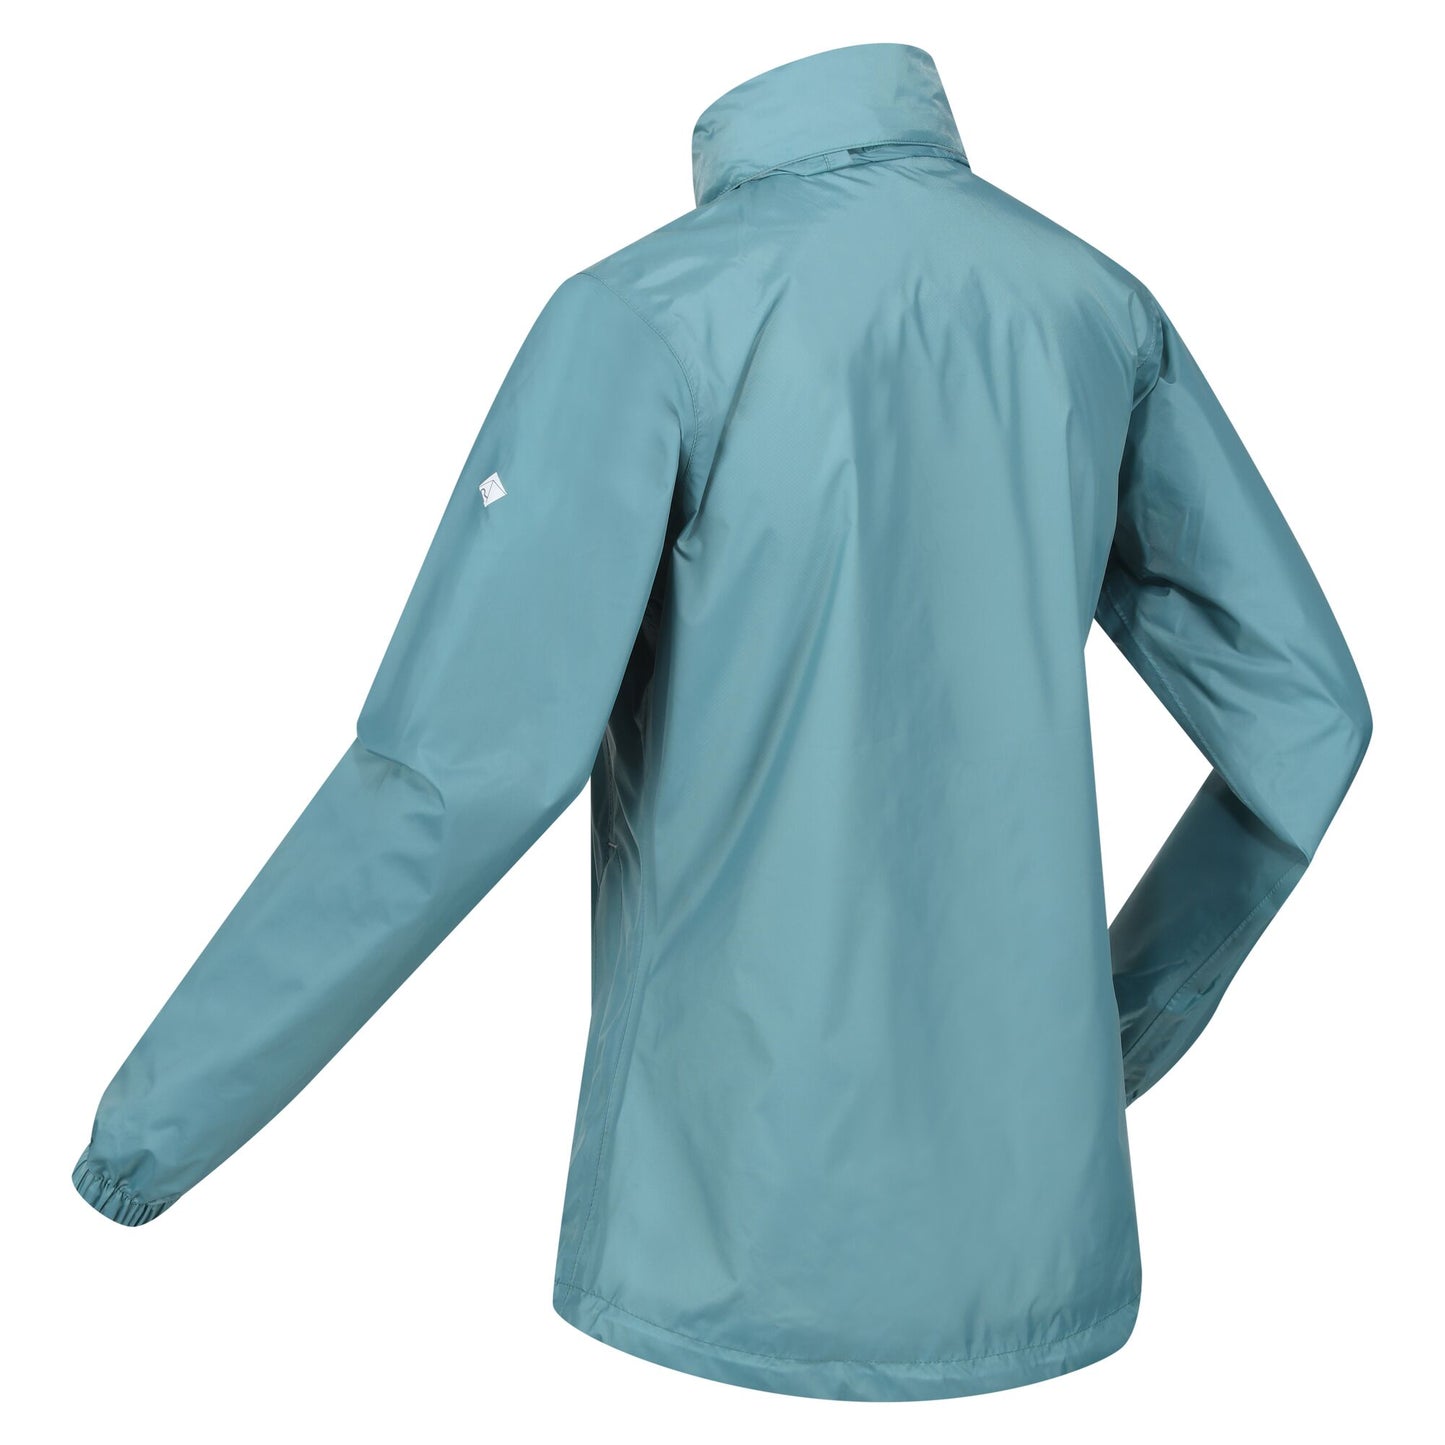 Regatta Women's Corinne IV Waterproof Packaway Jacket - Bristol Blue